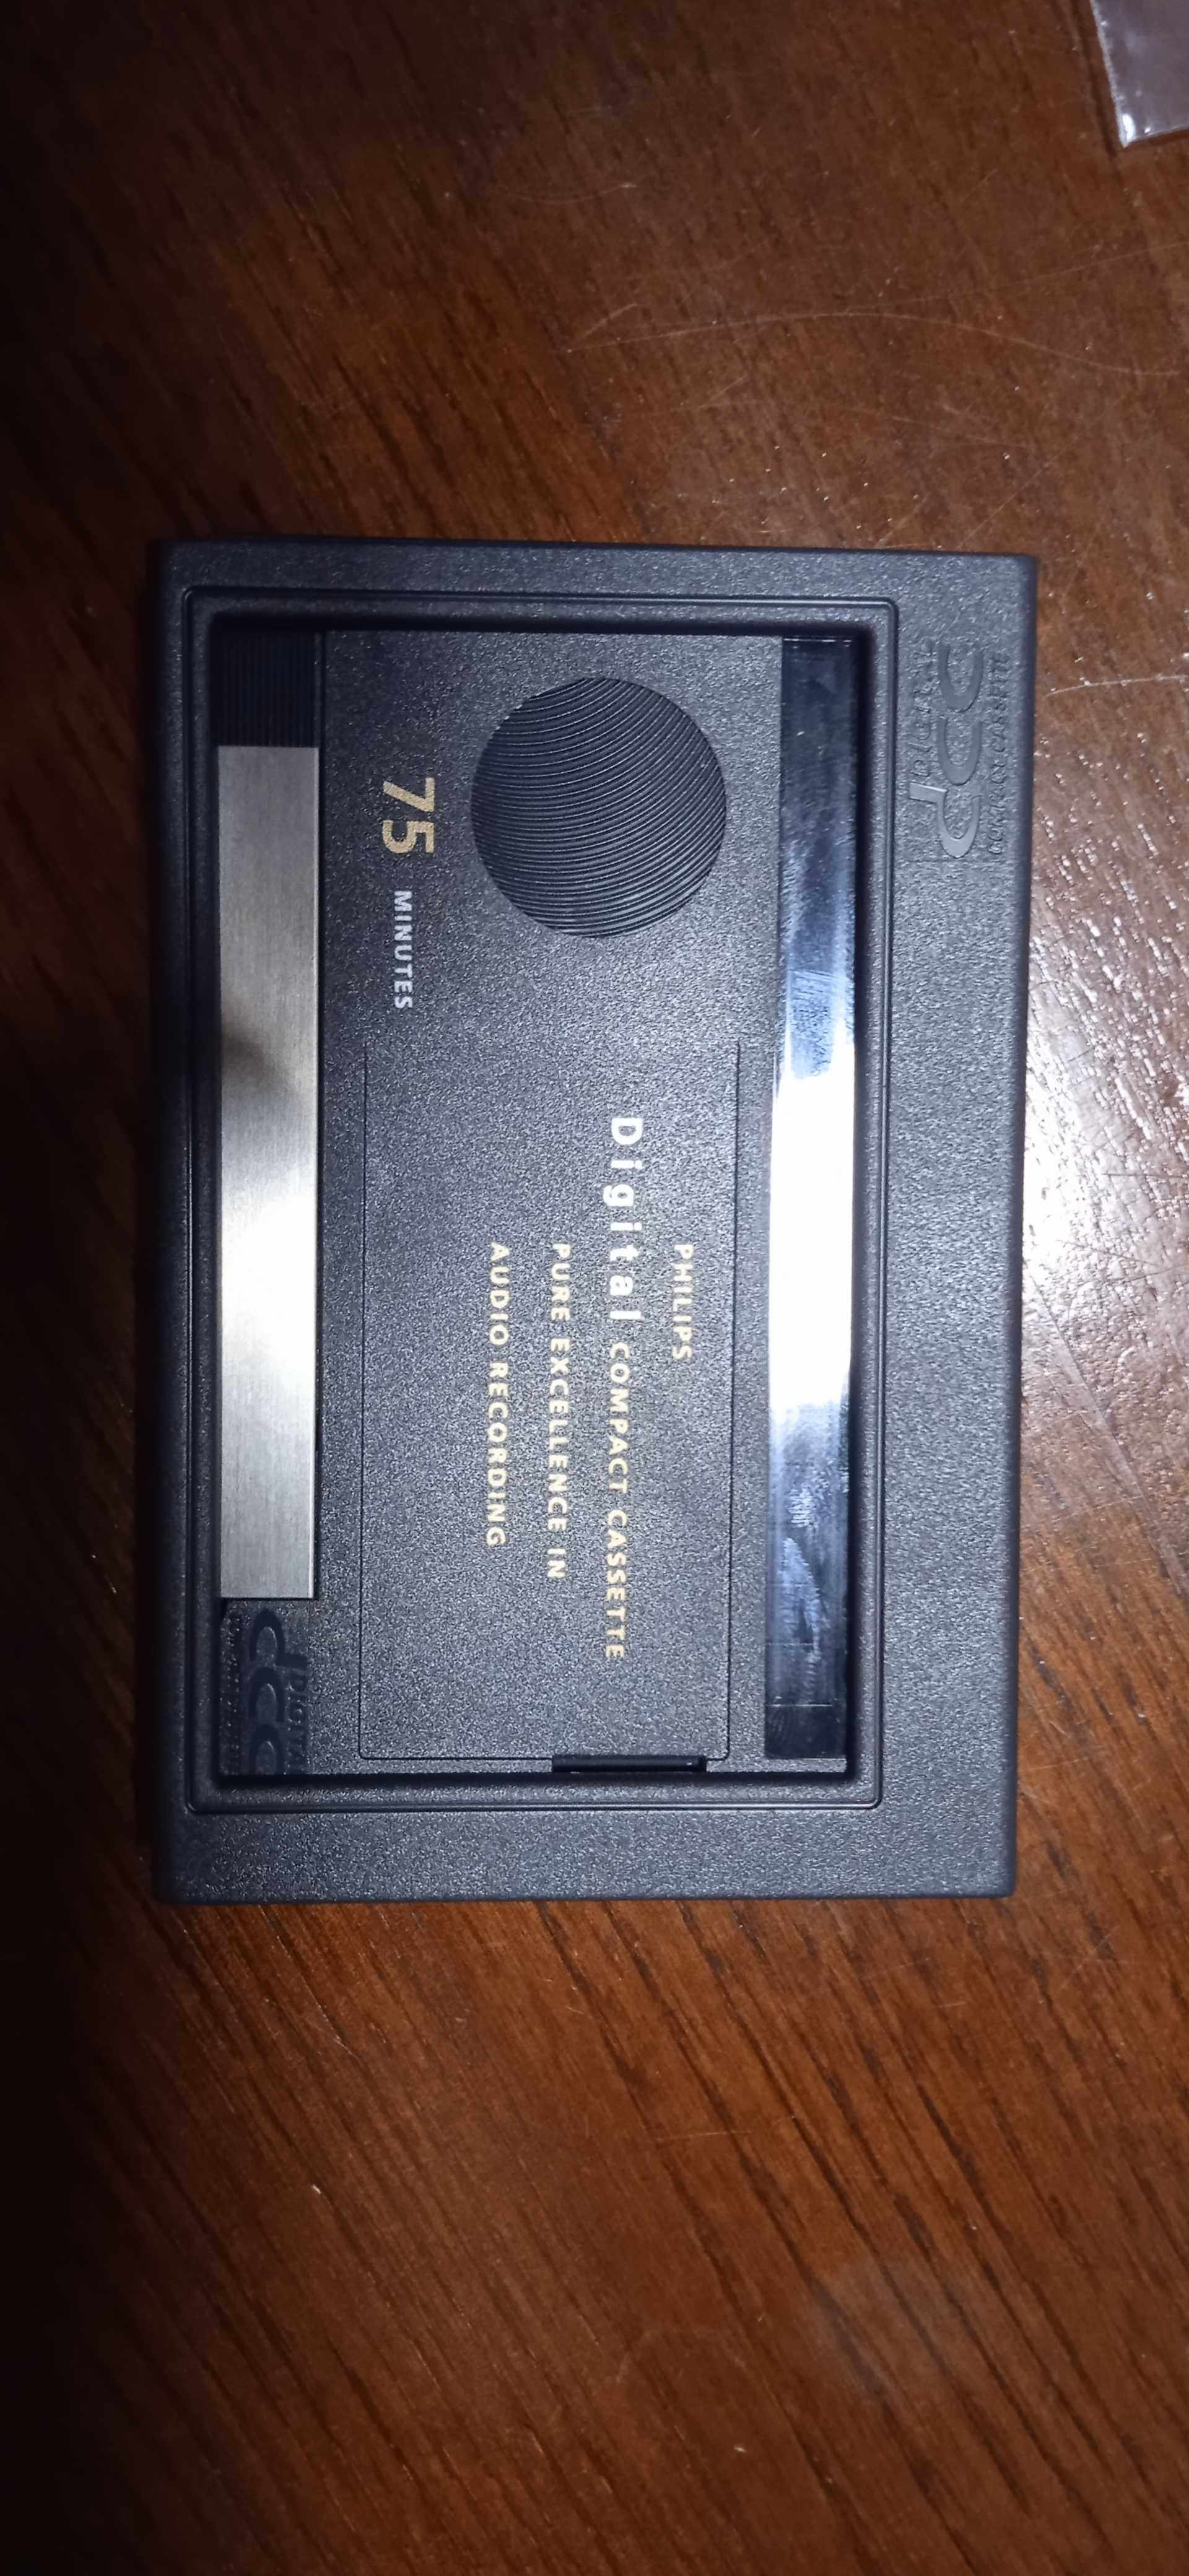 Philips DCC 600 Digital Compact Cassette